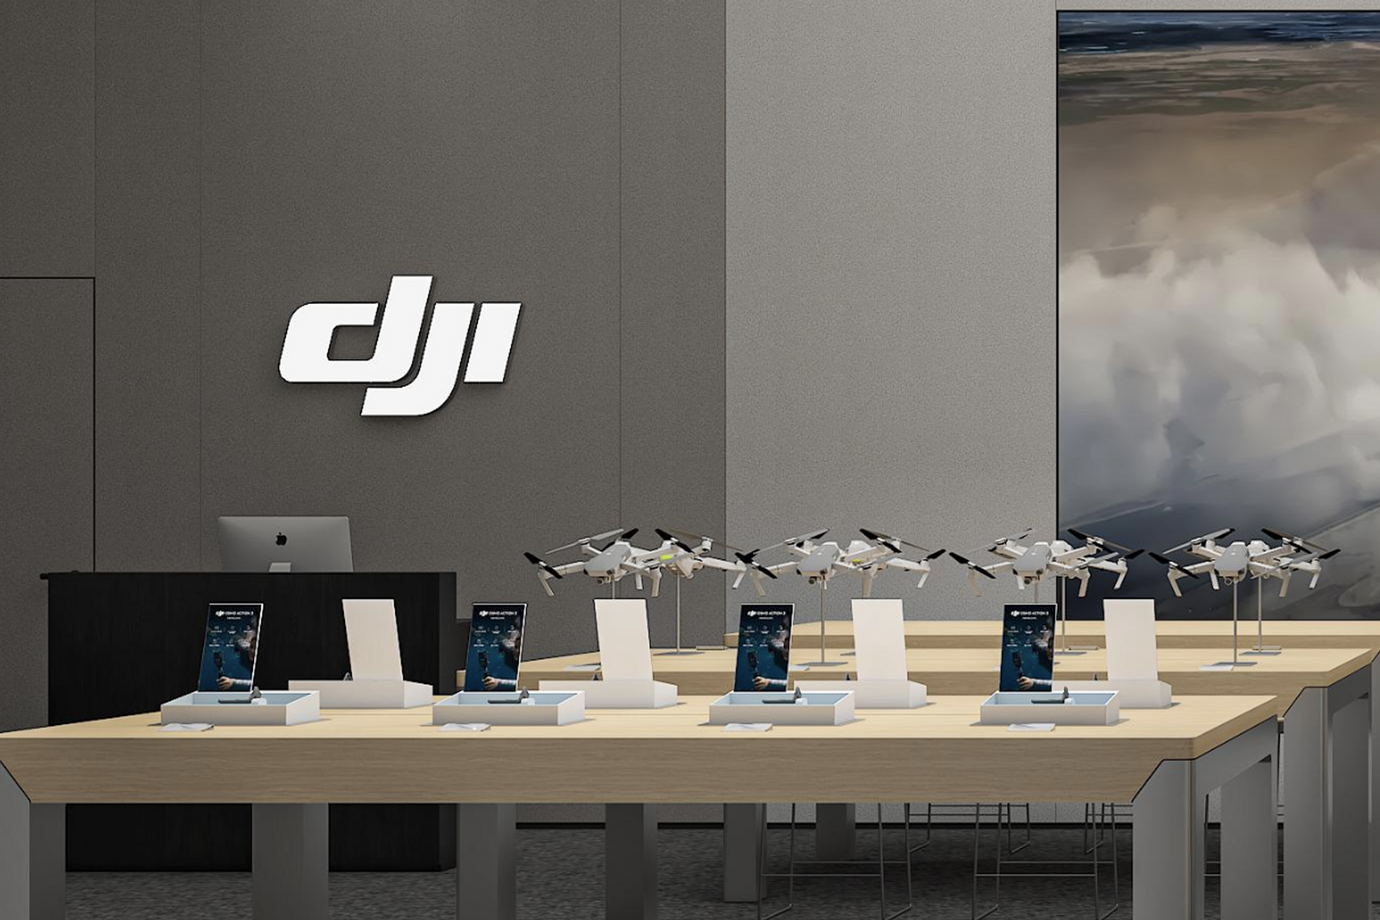 DJI Hasselblad Store Opening Soon in London!